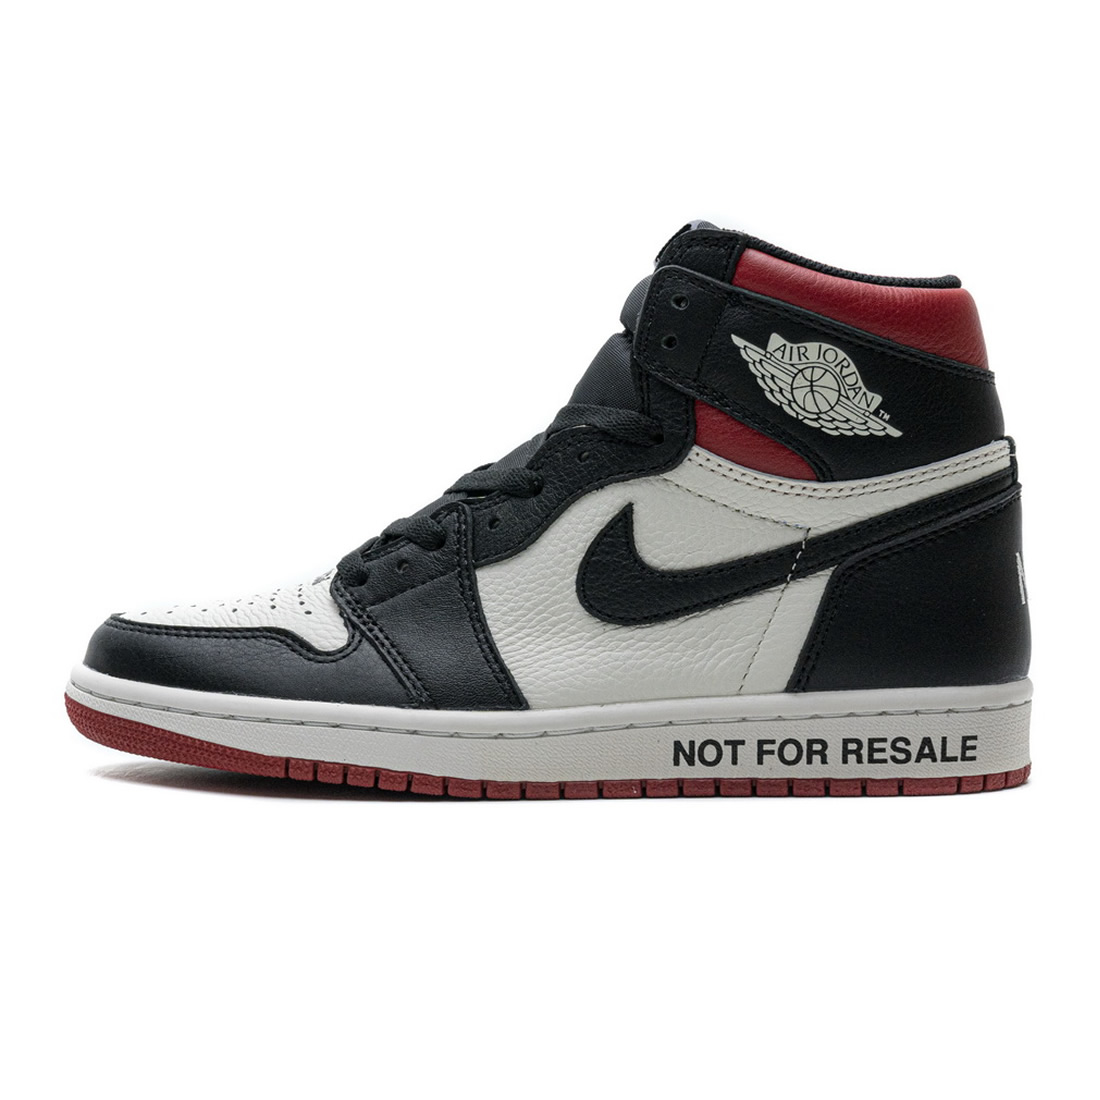 Nike 861428 106 Air Jordan 1 Nrg Og High Not For Resale Varsity Red 1 - www.kickbulk.cc